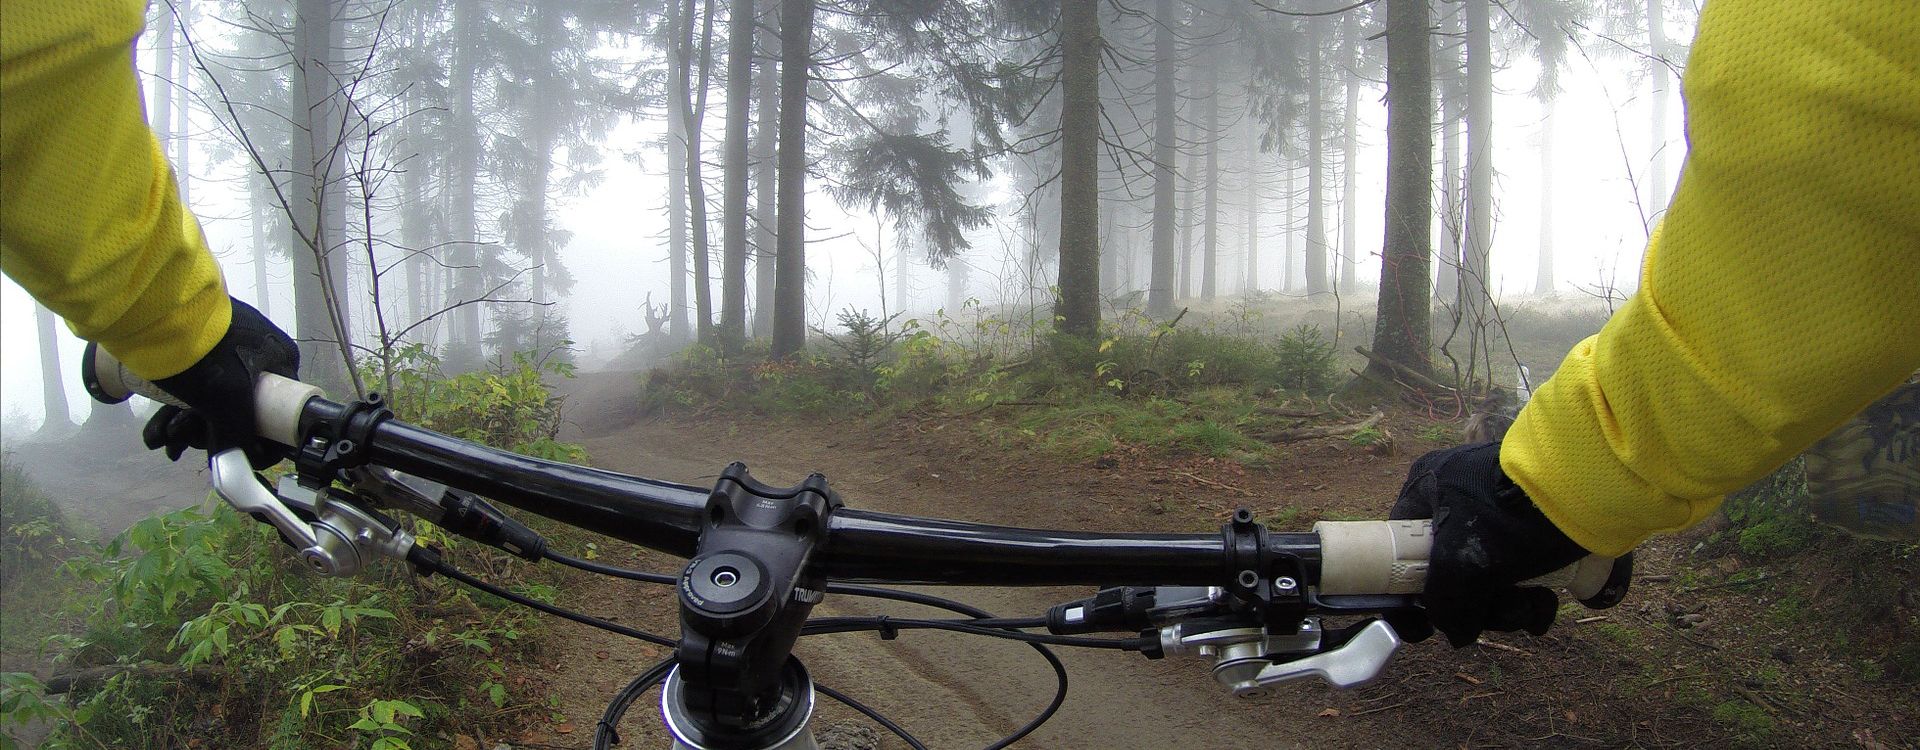 e-Bike Touren im Erzgebirge aus Sicht des Radfahrers